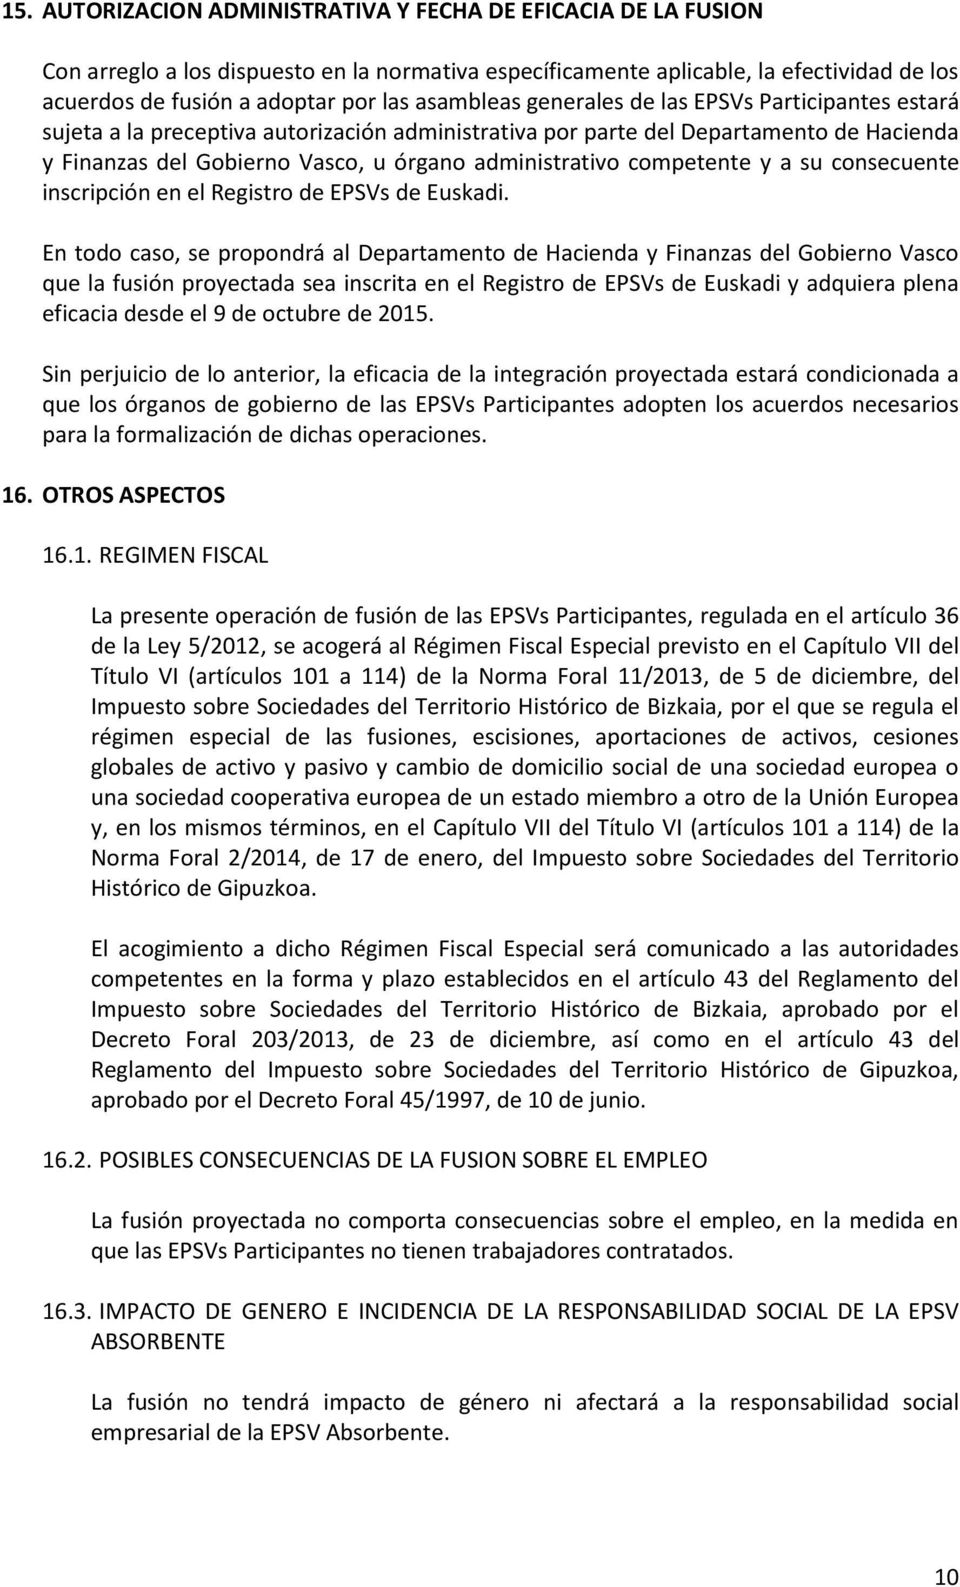 competente y a su consecuente inscripción en el Registro de EPSVs de Euskadi.